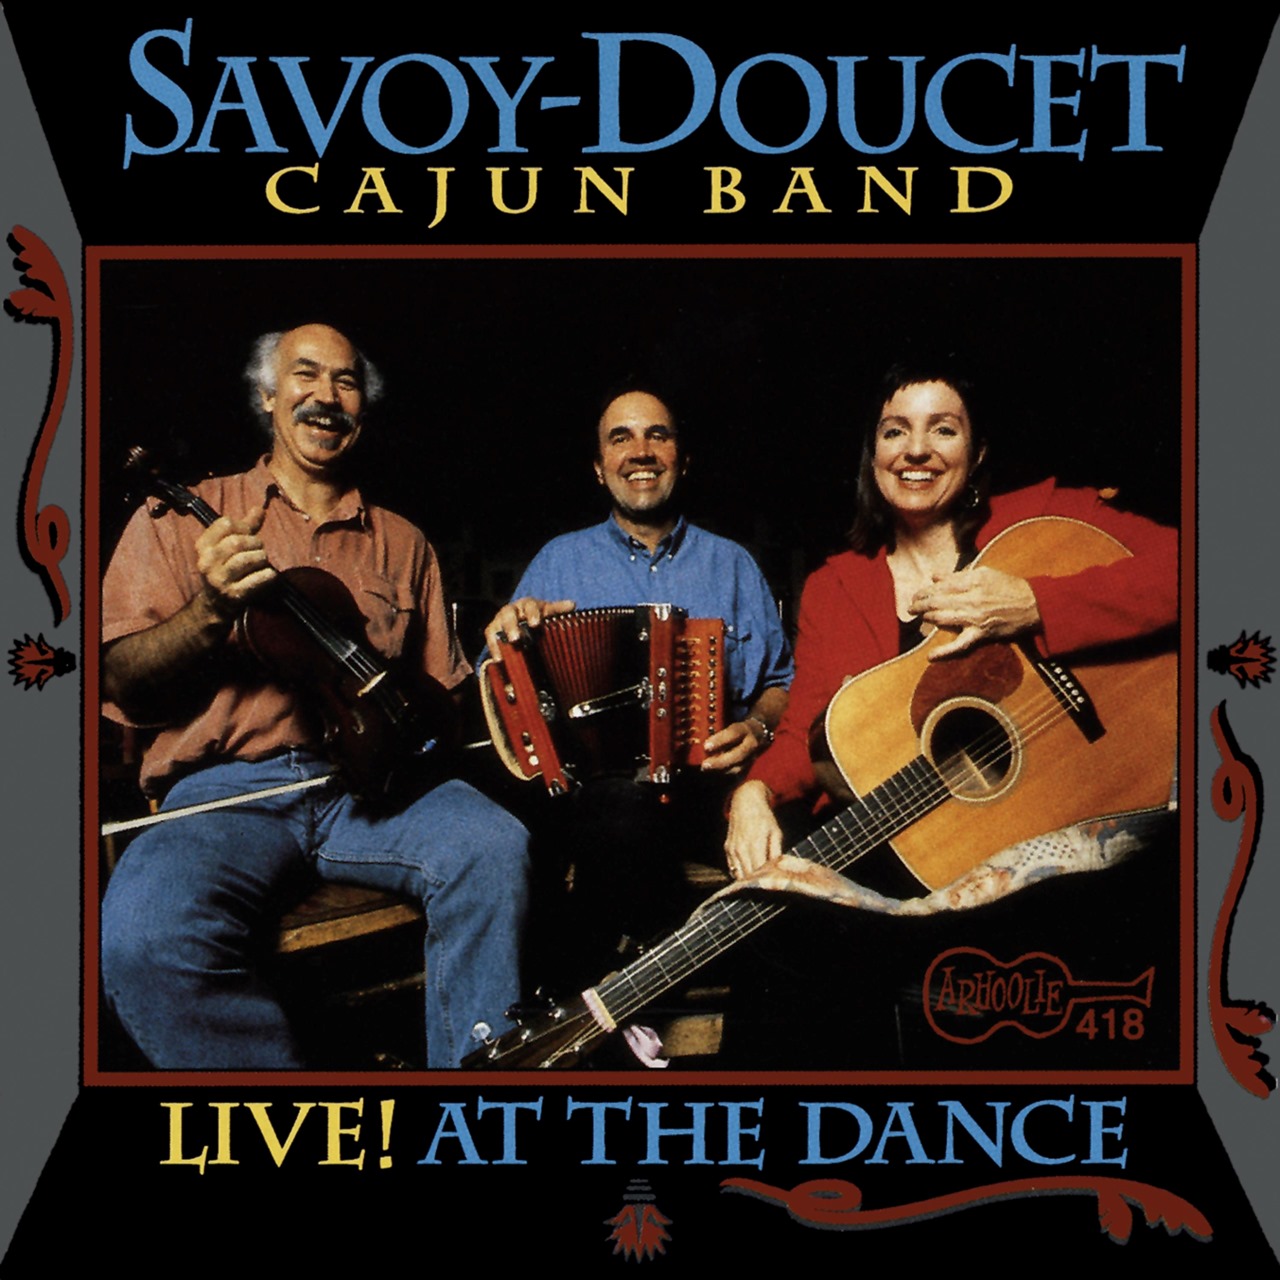 Savoy-Doucet Cajun Band – Live! At The Dance cobver album